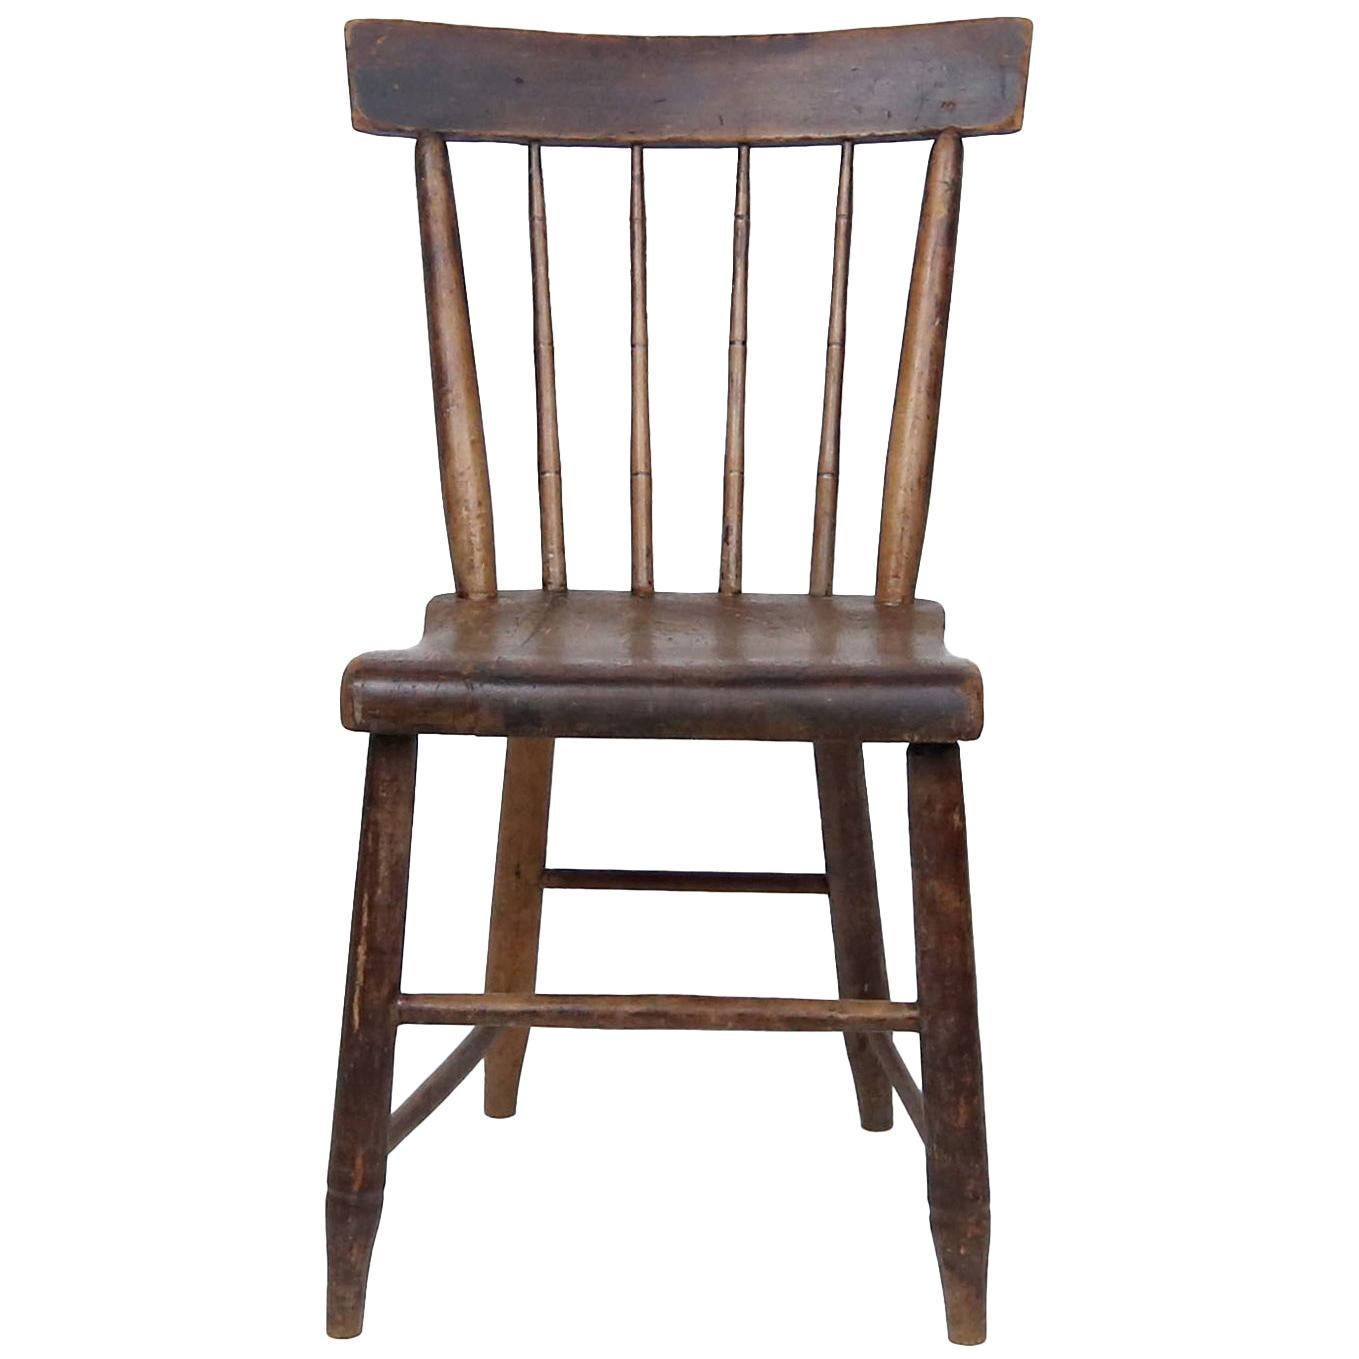 Amerikanischer Windsor-Stuhl des frühen 19. Jahrhunderts